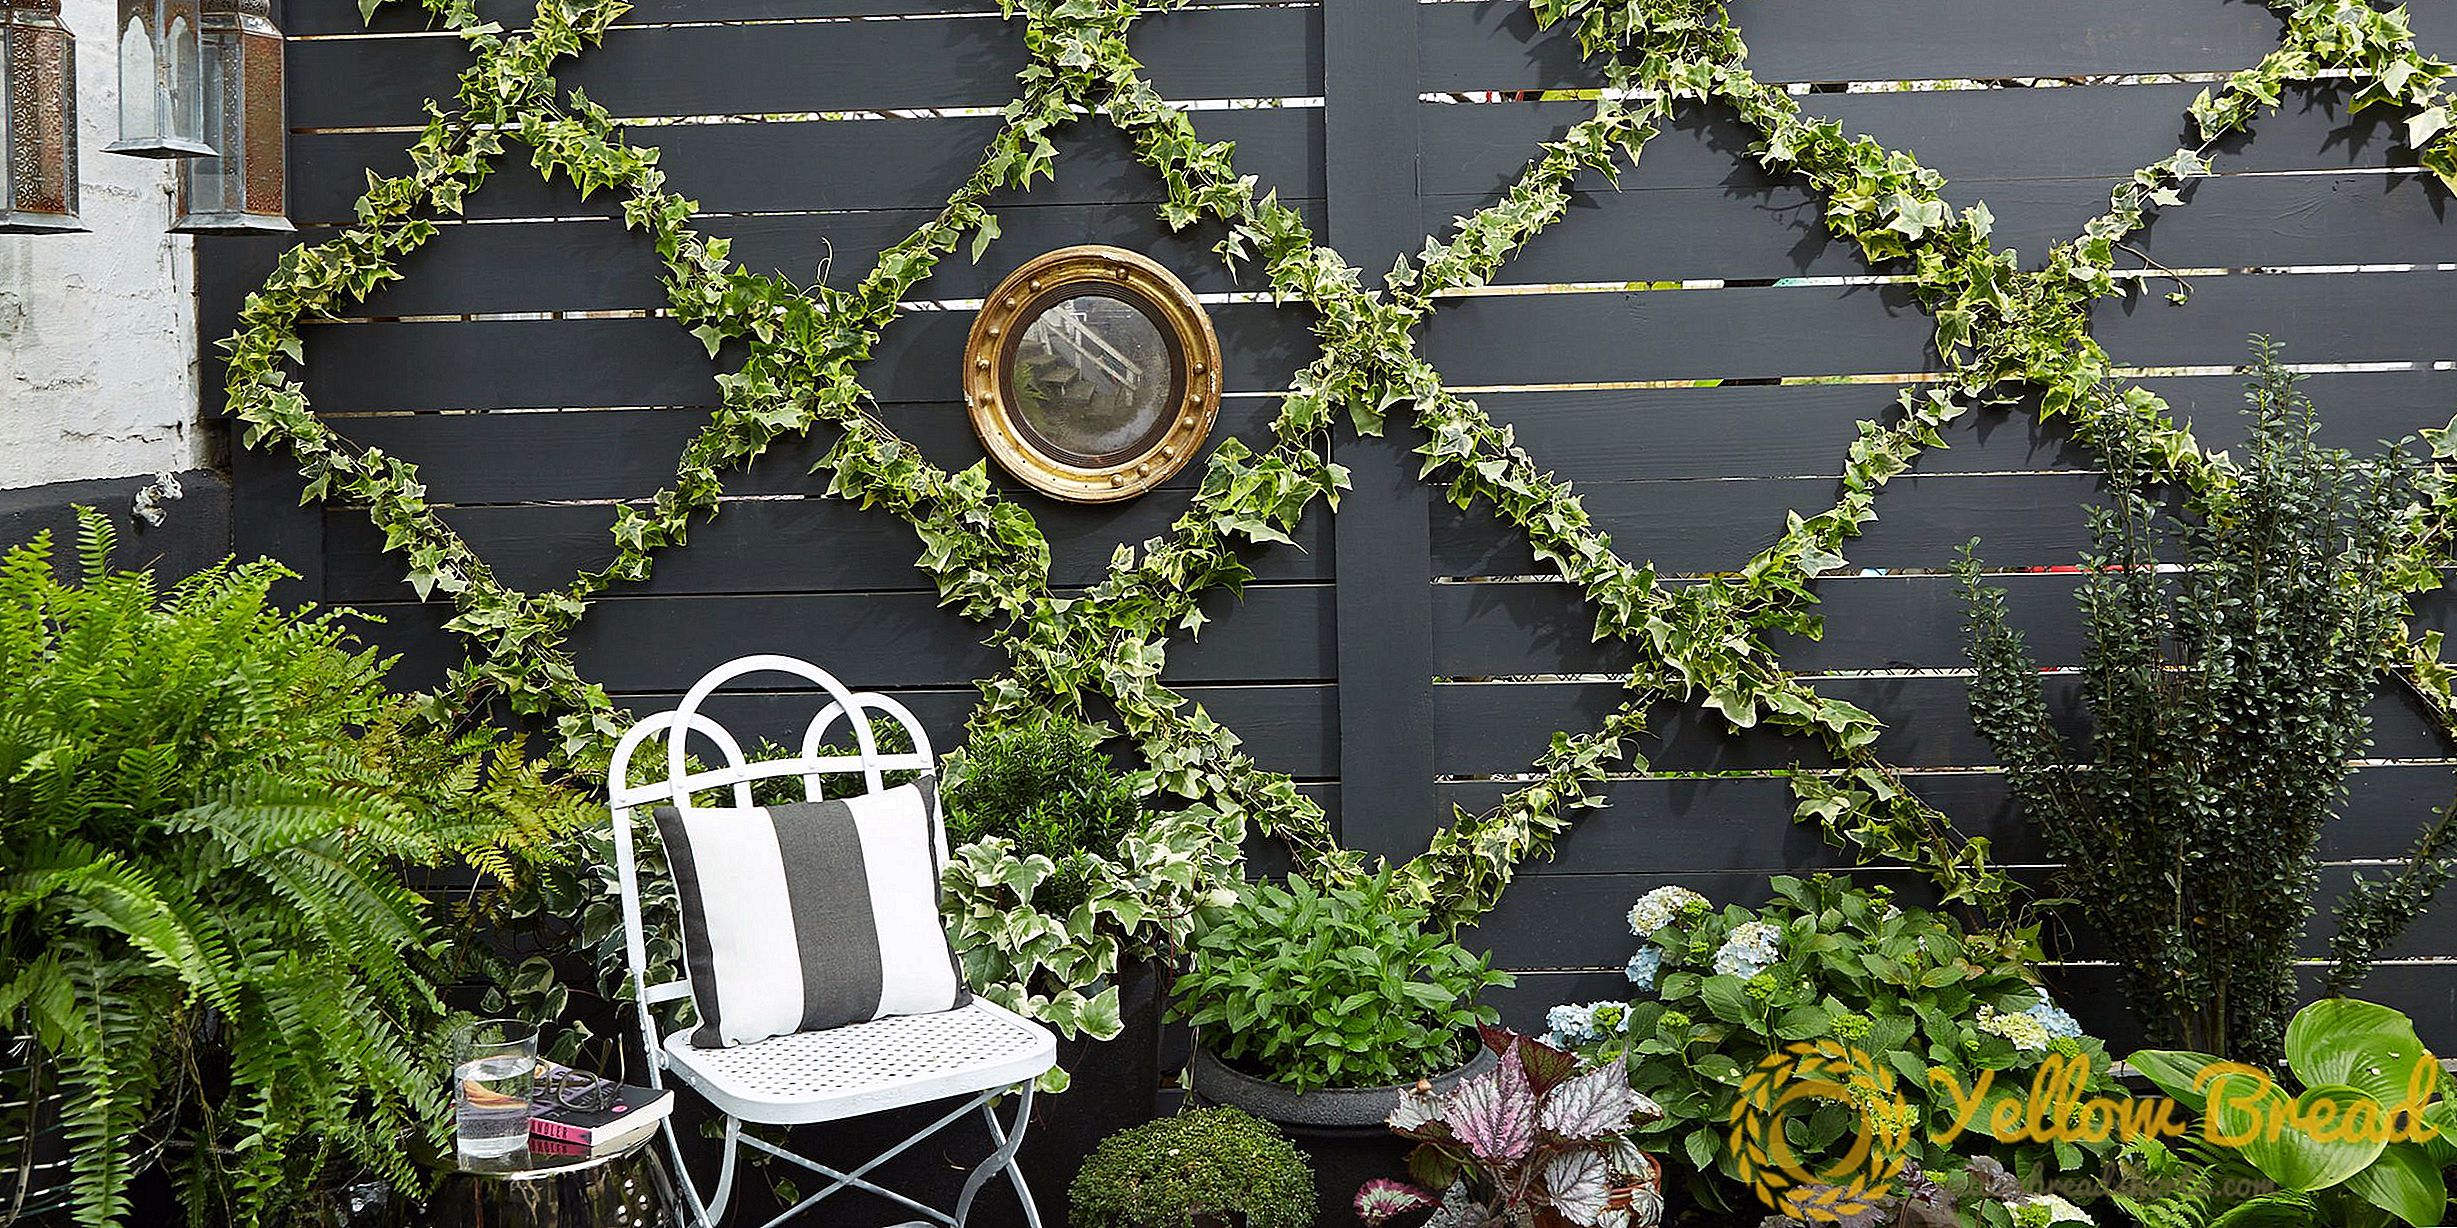 DIY Garden Design, który tworzy luksusową przestrzeń w kilku prostych krokach